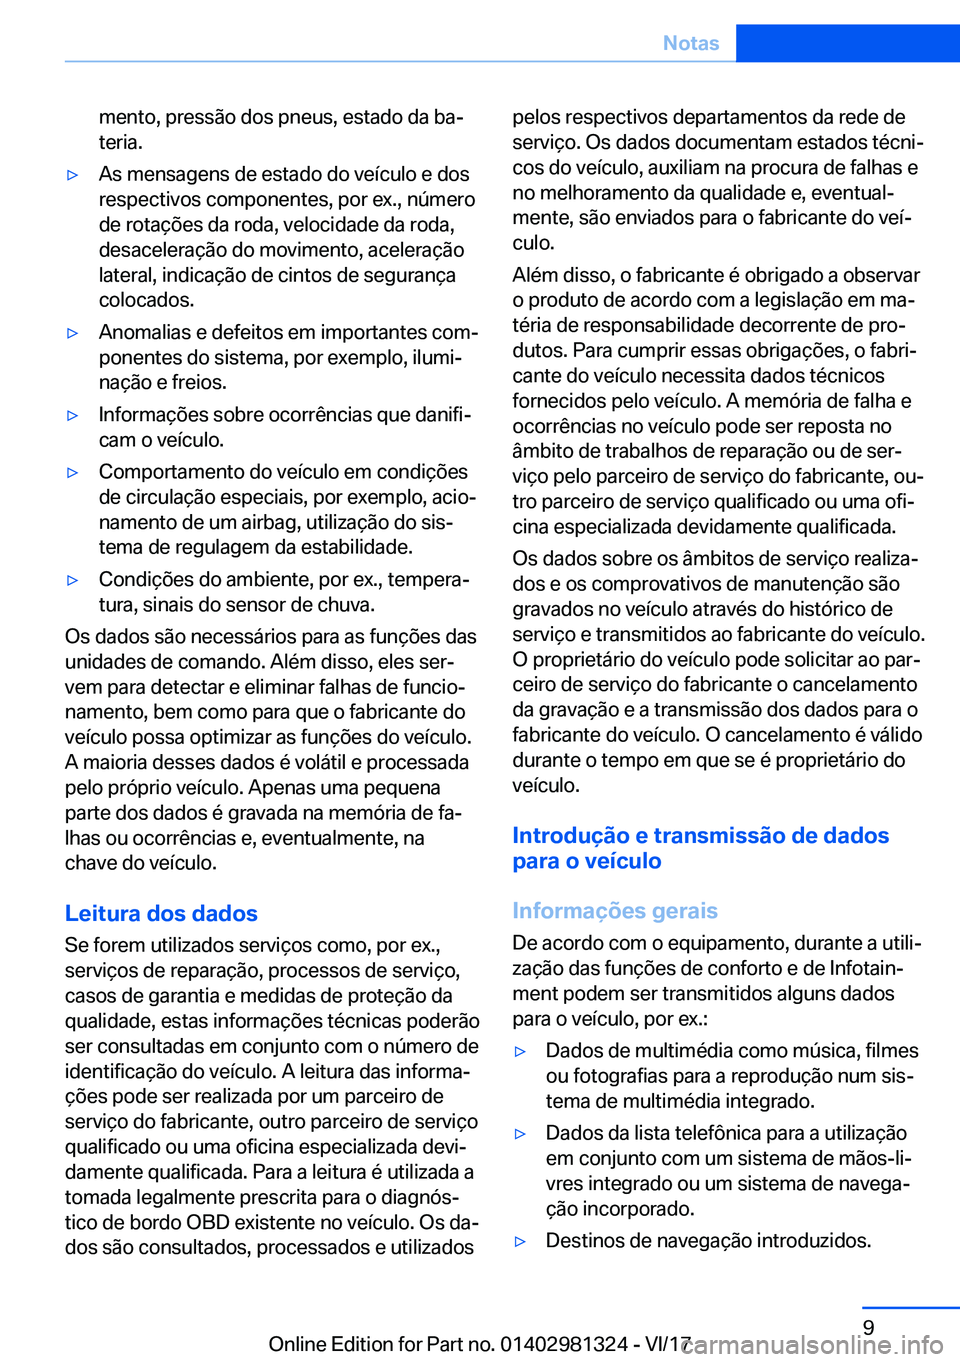 BMW X4 2018  Manual do condutor (in Portuguese) �m�e�n�t�o�,� �p�r�e�s�s�ã�o� �d�o�s� �p�n�e�u�s�,� �e�s�t�a�d�o� �d�a� �b�aª�t�e�r�i�a�.y�A�s� �m�e�n�s�a�g�e�n�s� �d�e� �e�s�t�a�d�o� �d�o� �v�e�